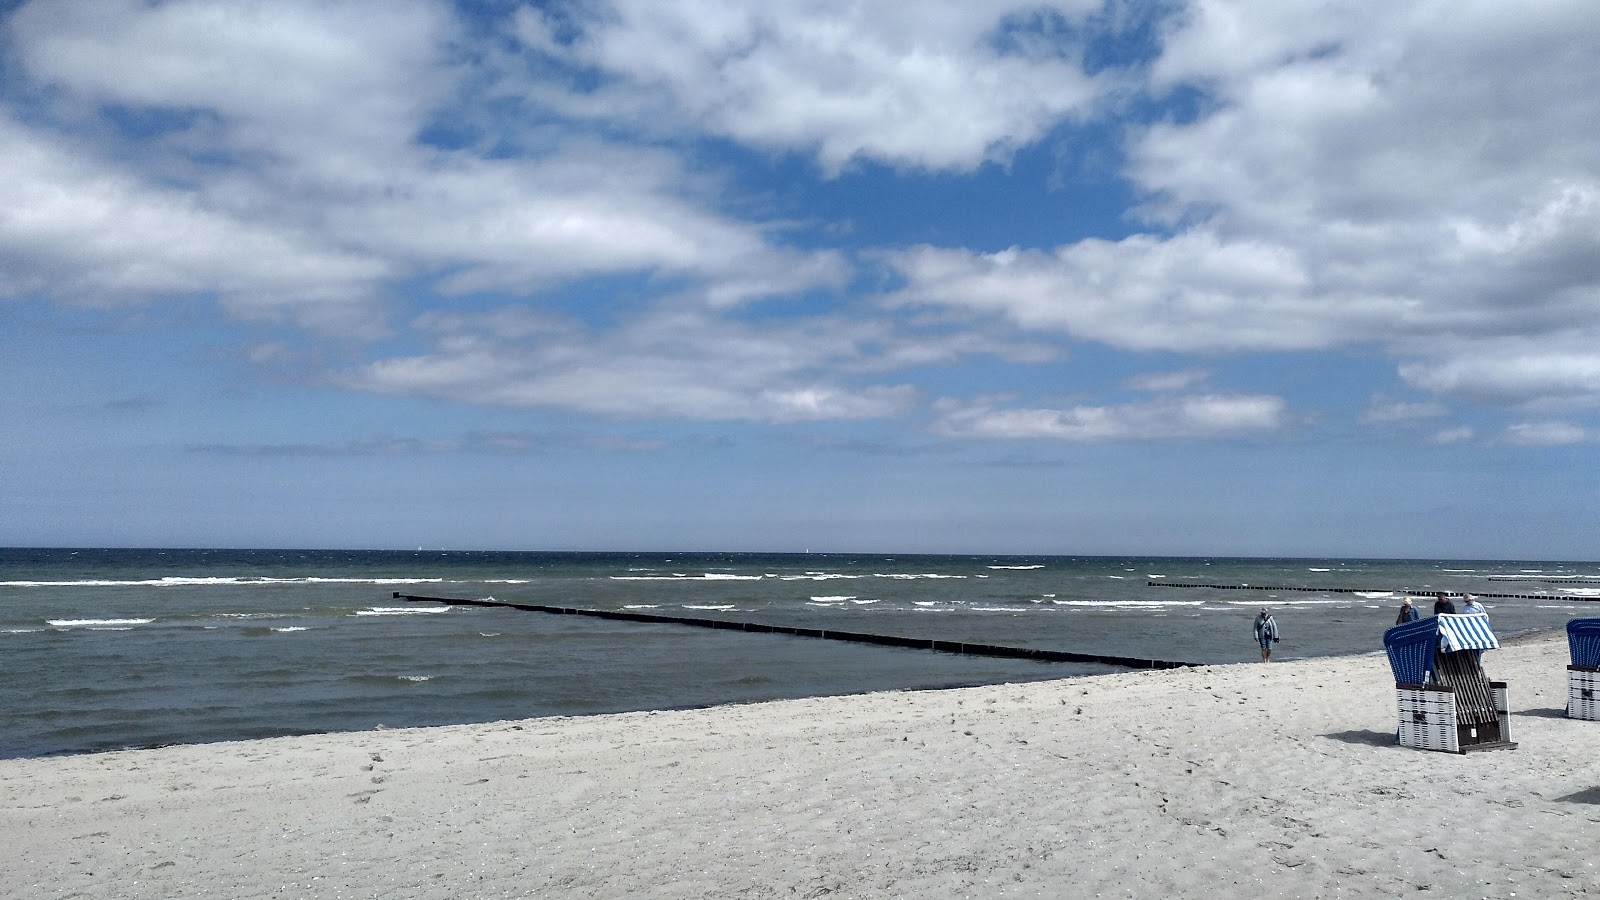 Black Bush Beach'in fotoğrafı geniş plaj ile birlikte